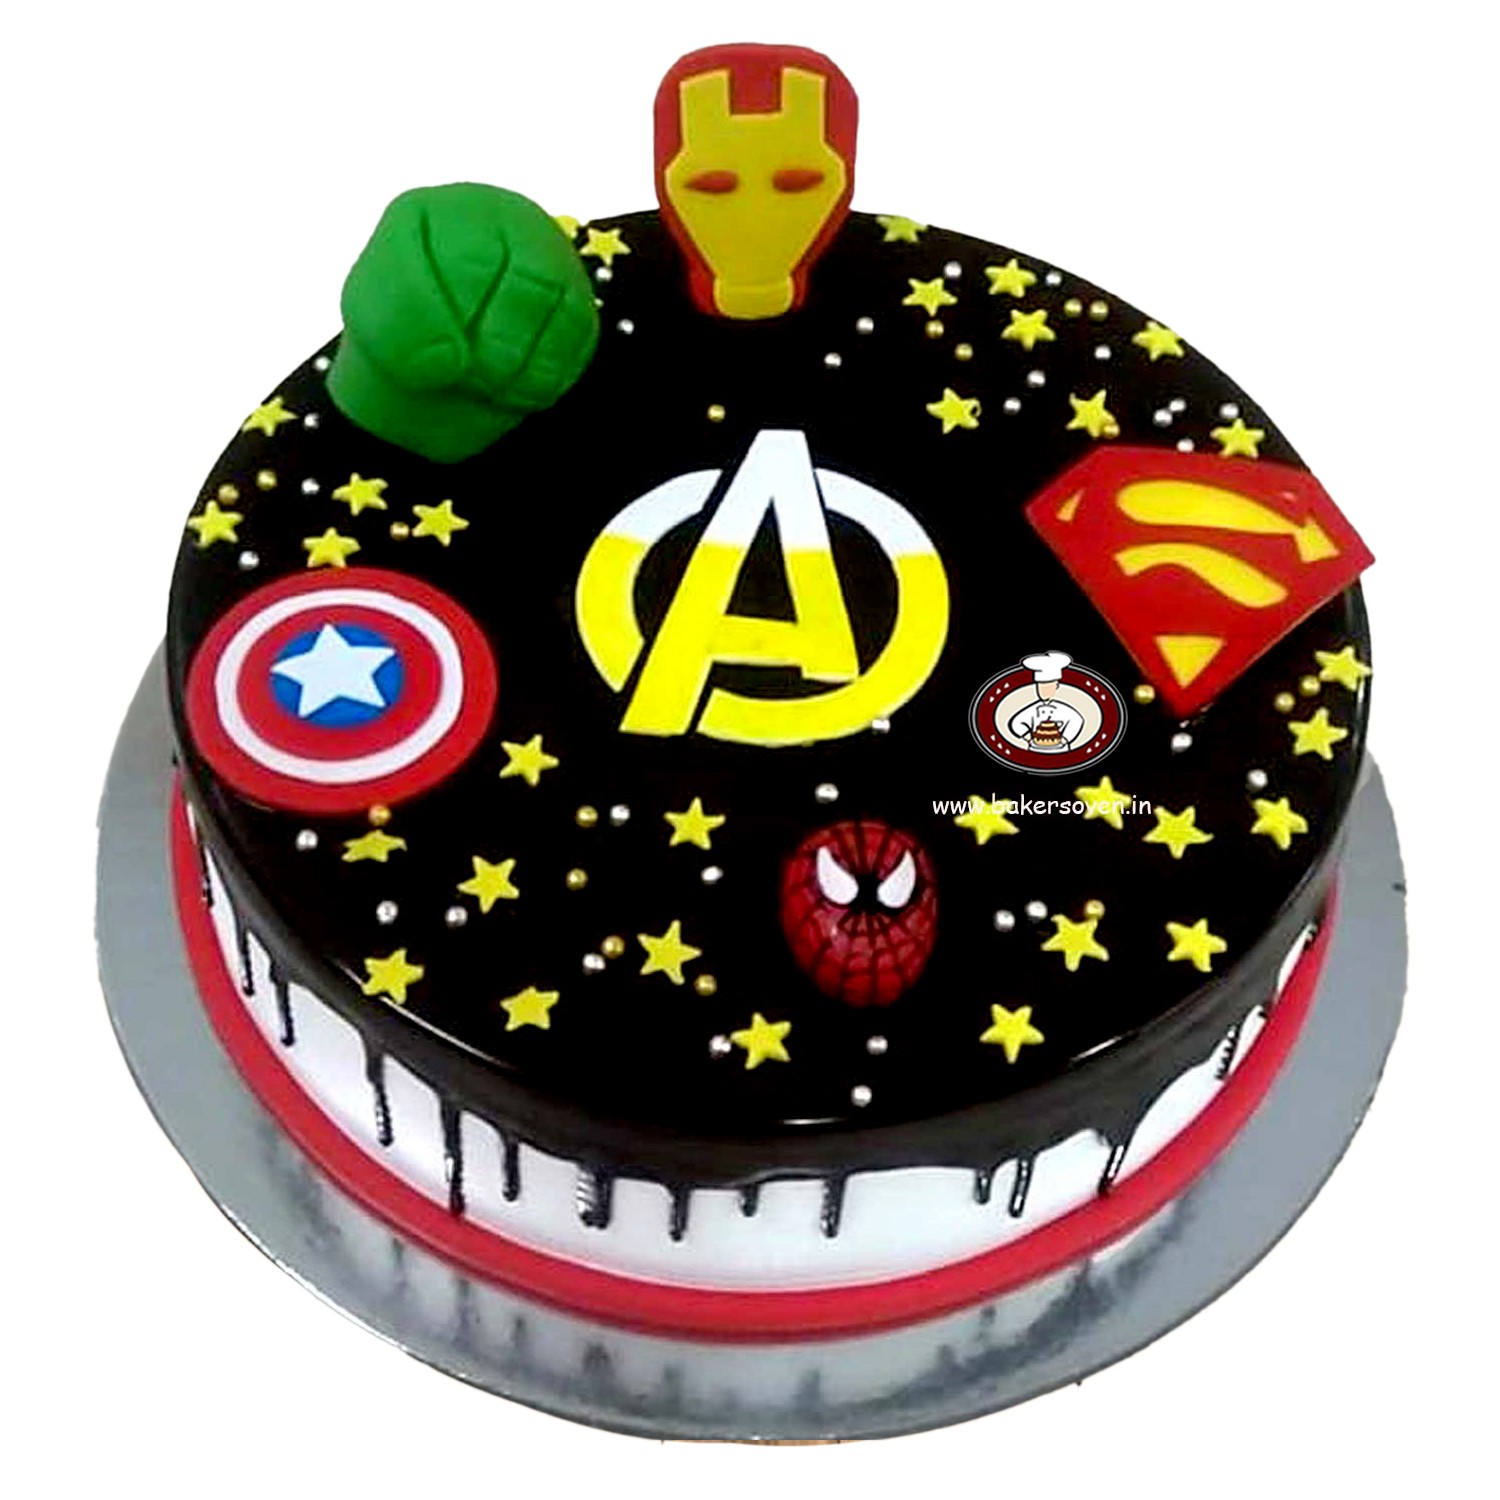 Superhero Birthday Cake – With Sprinkles on Top